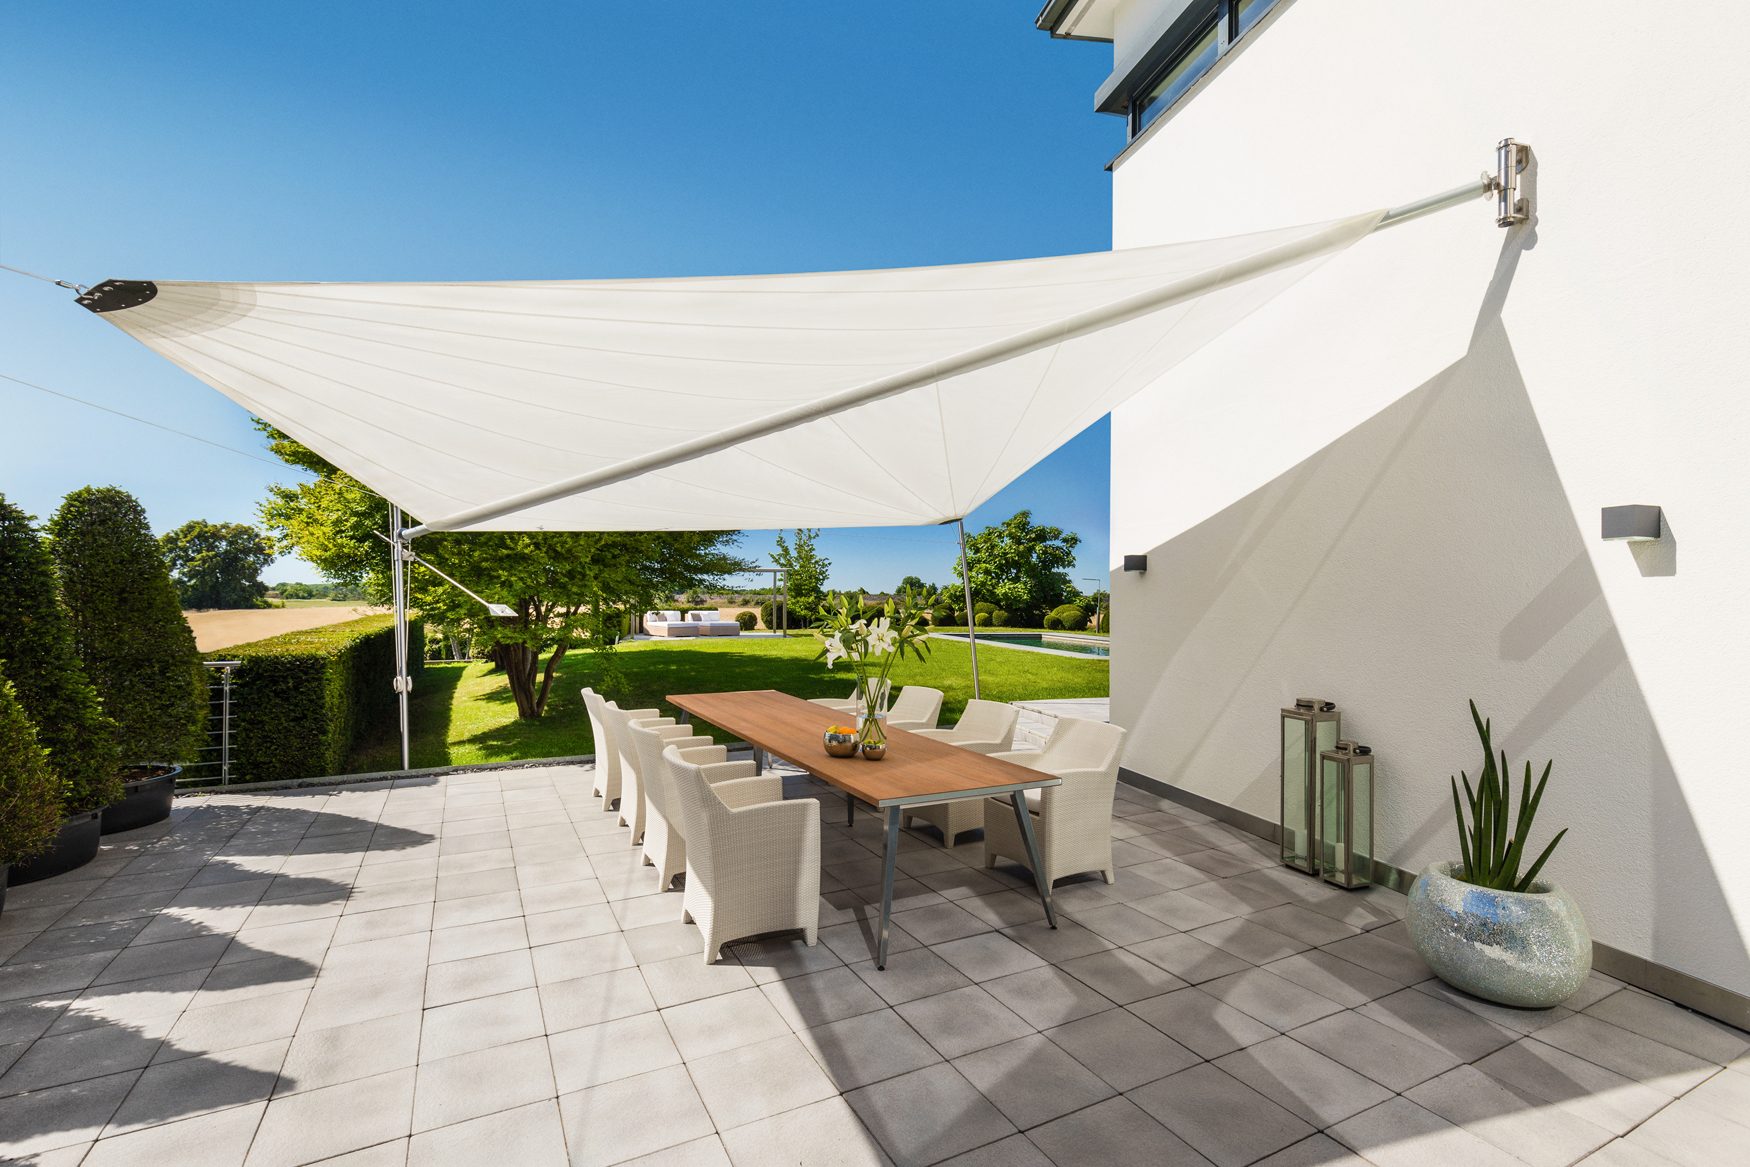 Halbautomatisches Diagonal Sonnensegel für die Terrasse von rewalux GmbH.jpg